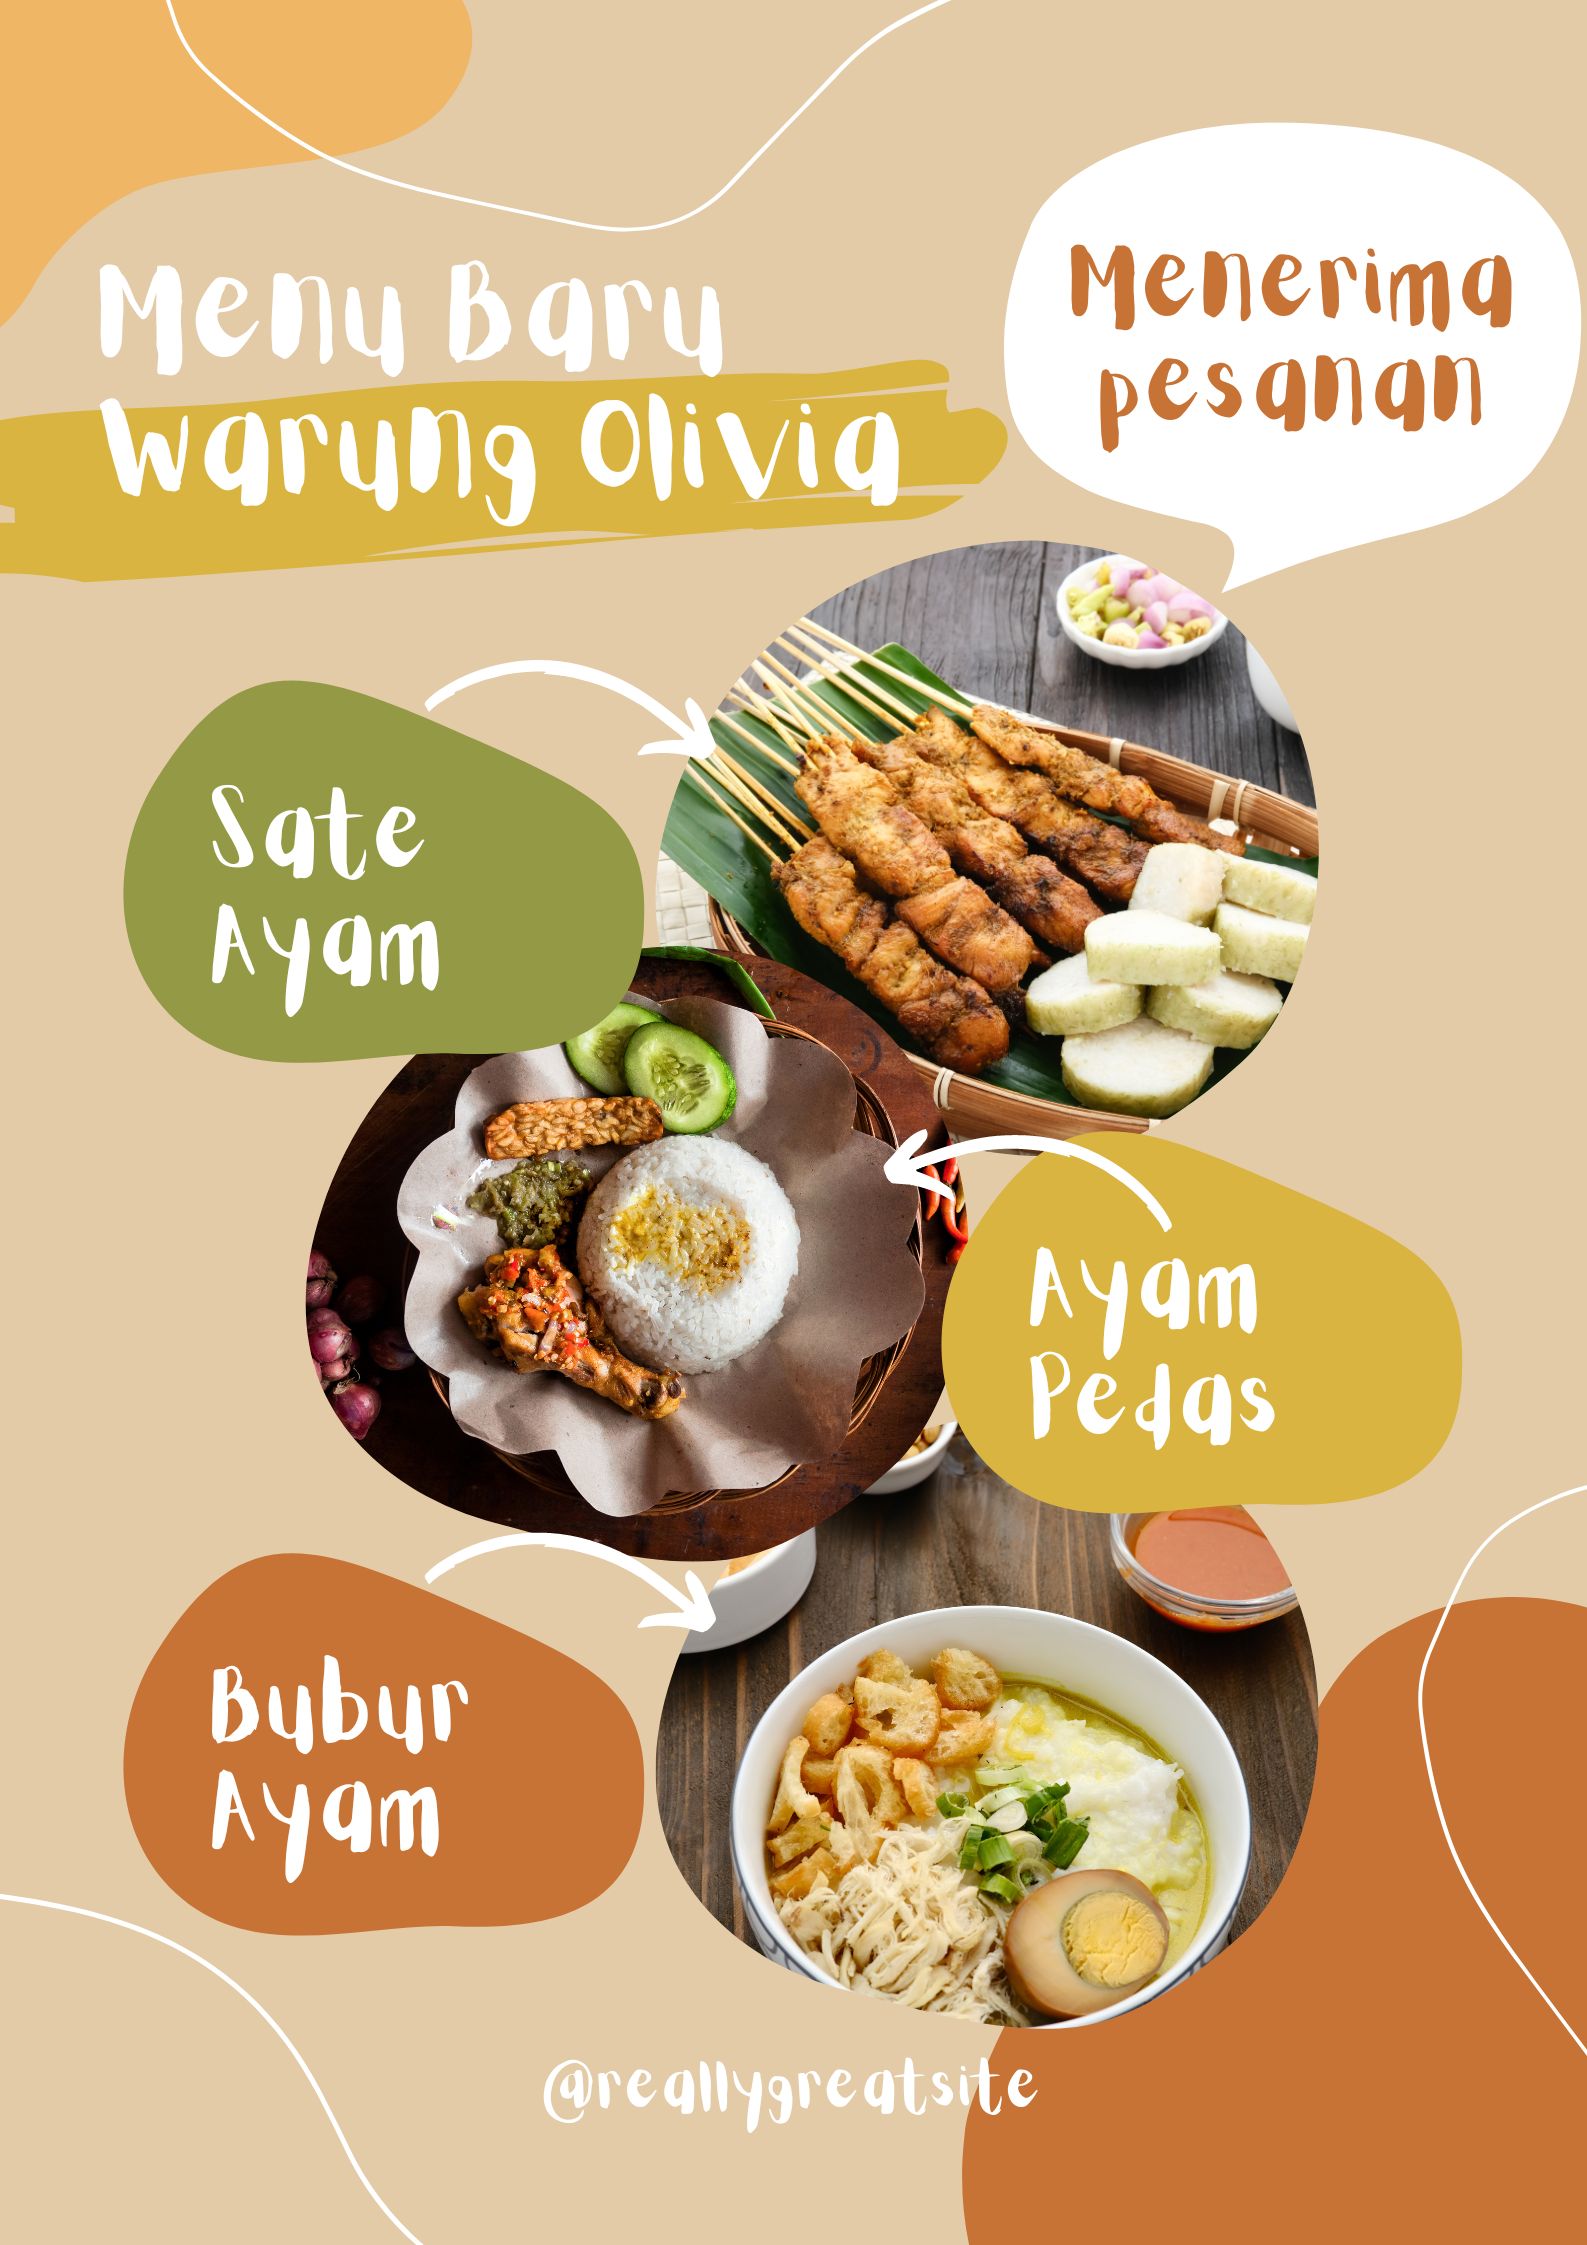 Download Template Desain Menu Sate Ayam Ayam pedas Bubur Ayam Orange Coklat Gratis